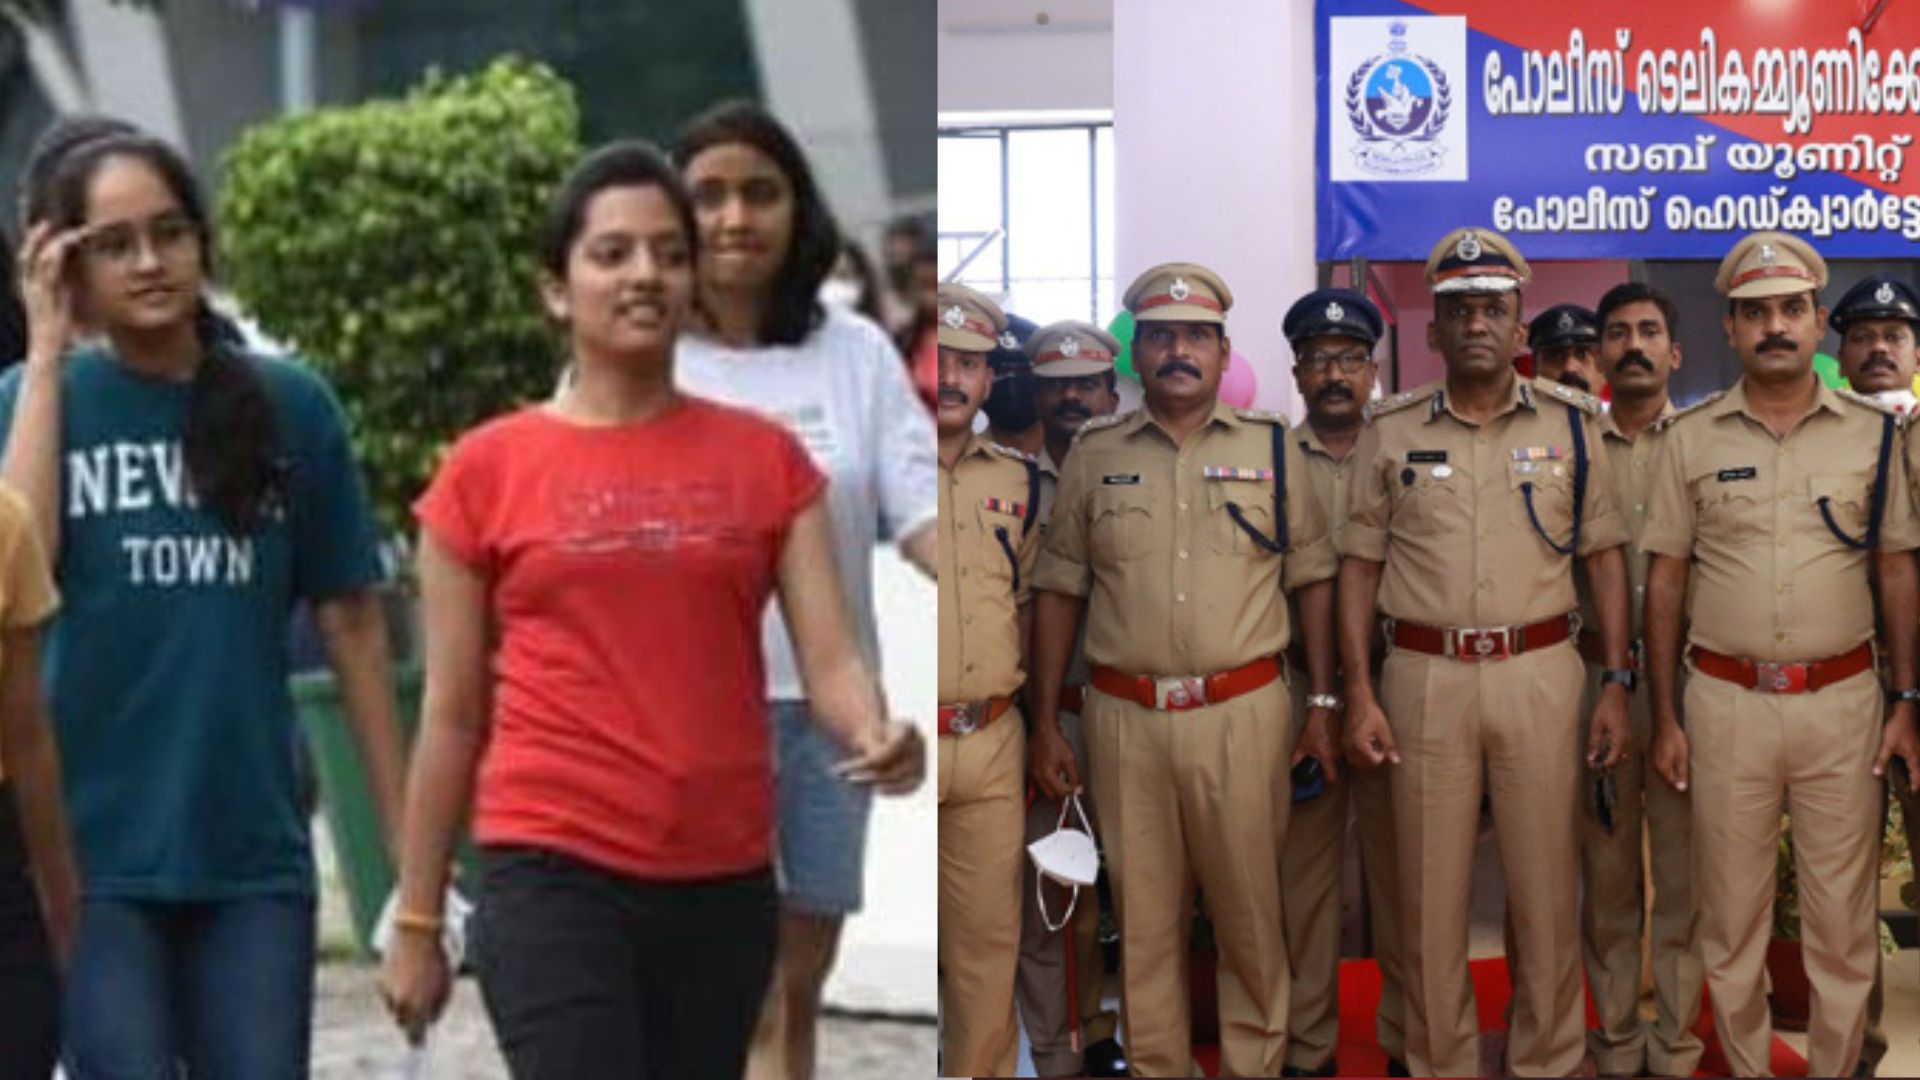 NEET Exam Controversy: केरल पुलिस ने दो और लोगों को किया गिरफ्तार, नीट परीक्षा में लड़कियों के अंत:वस्त्र उतारने का मामला